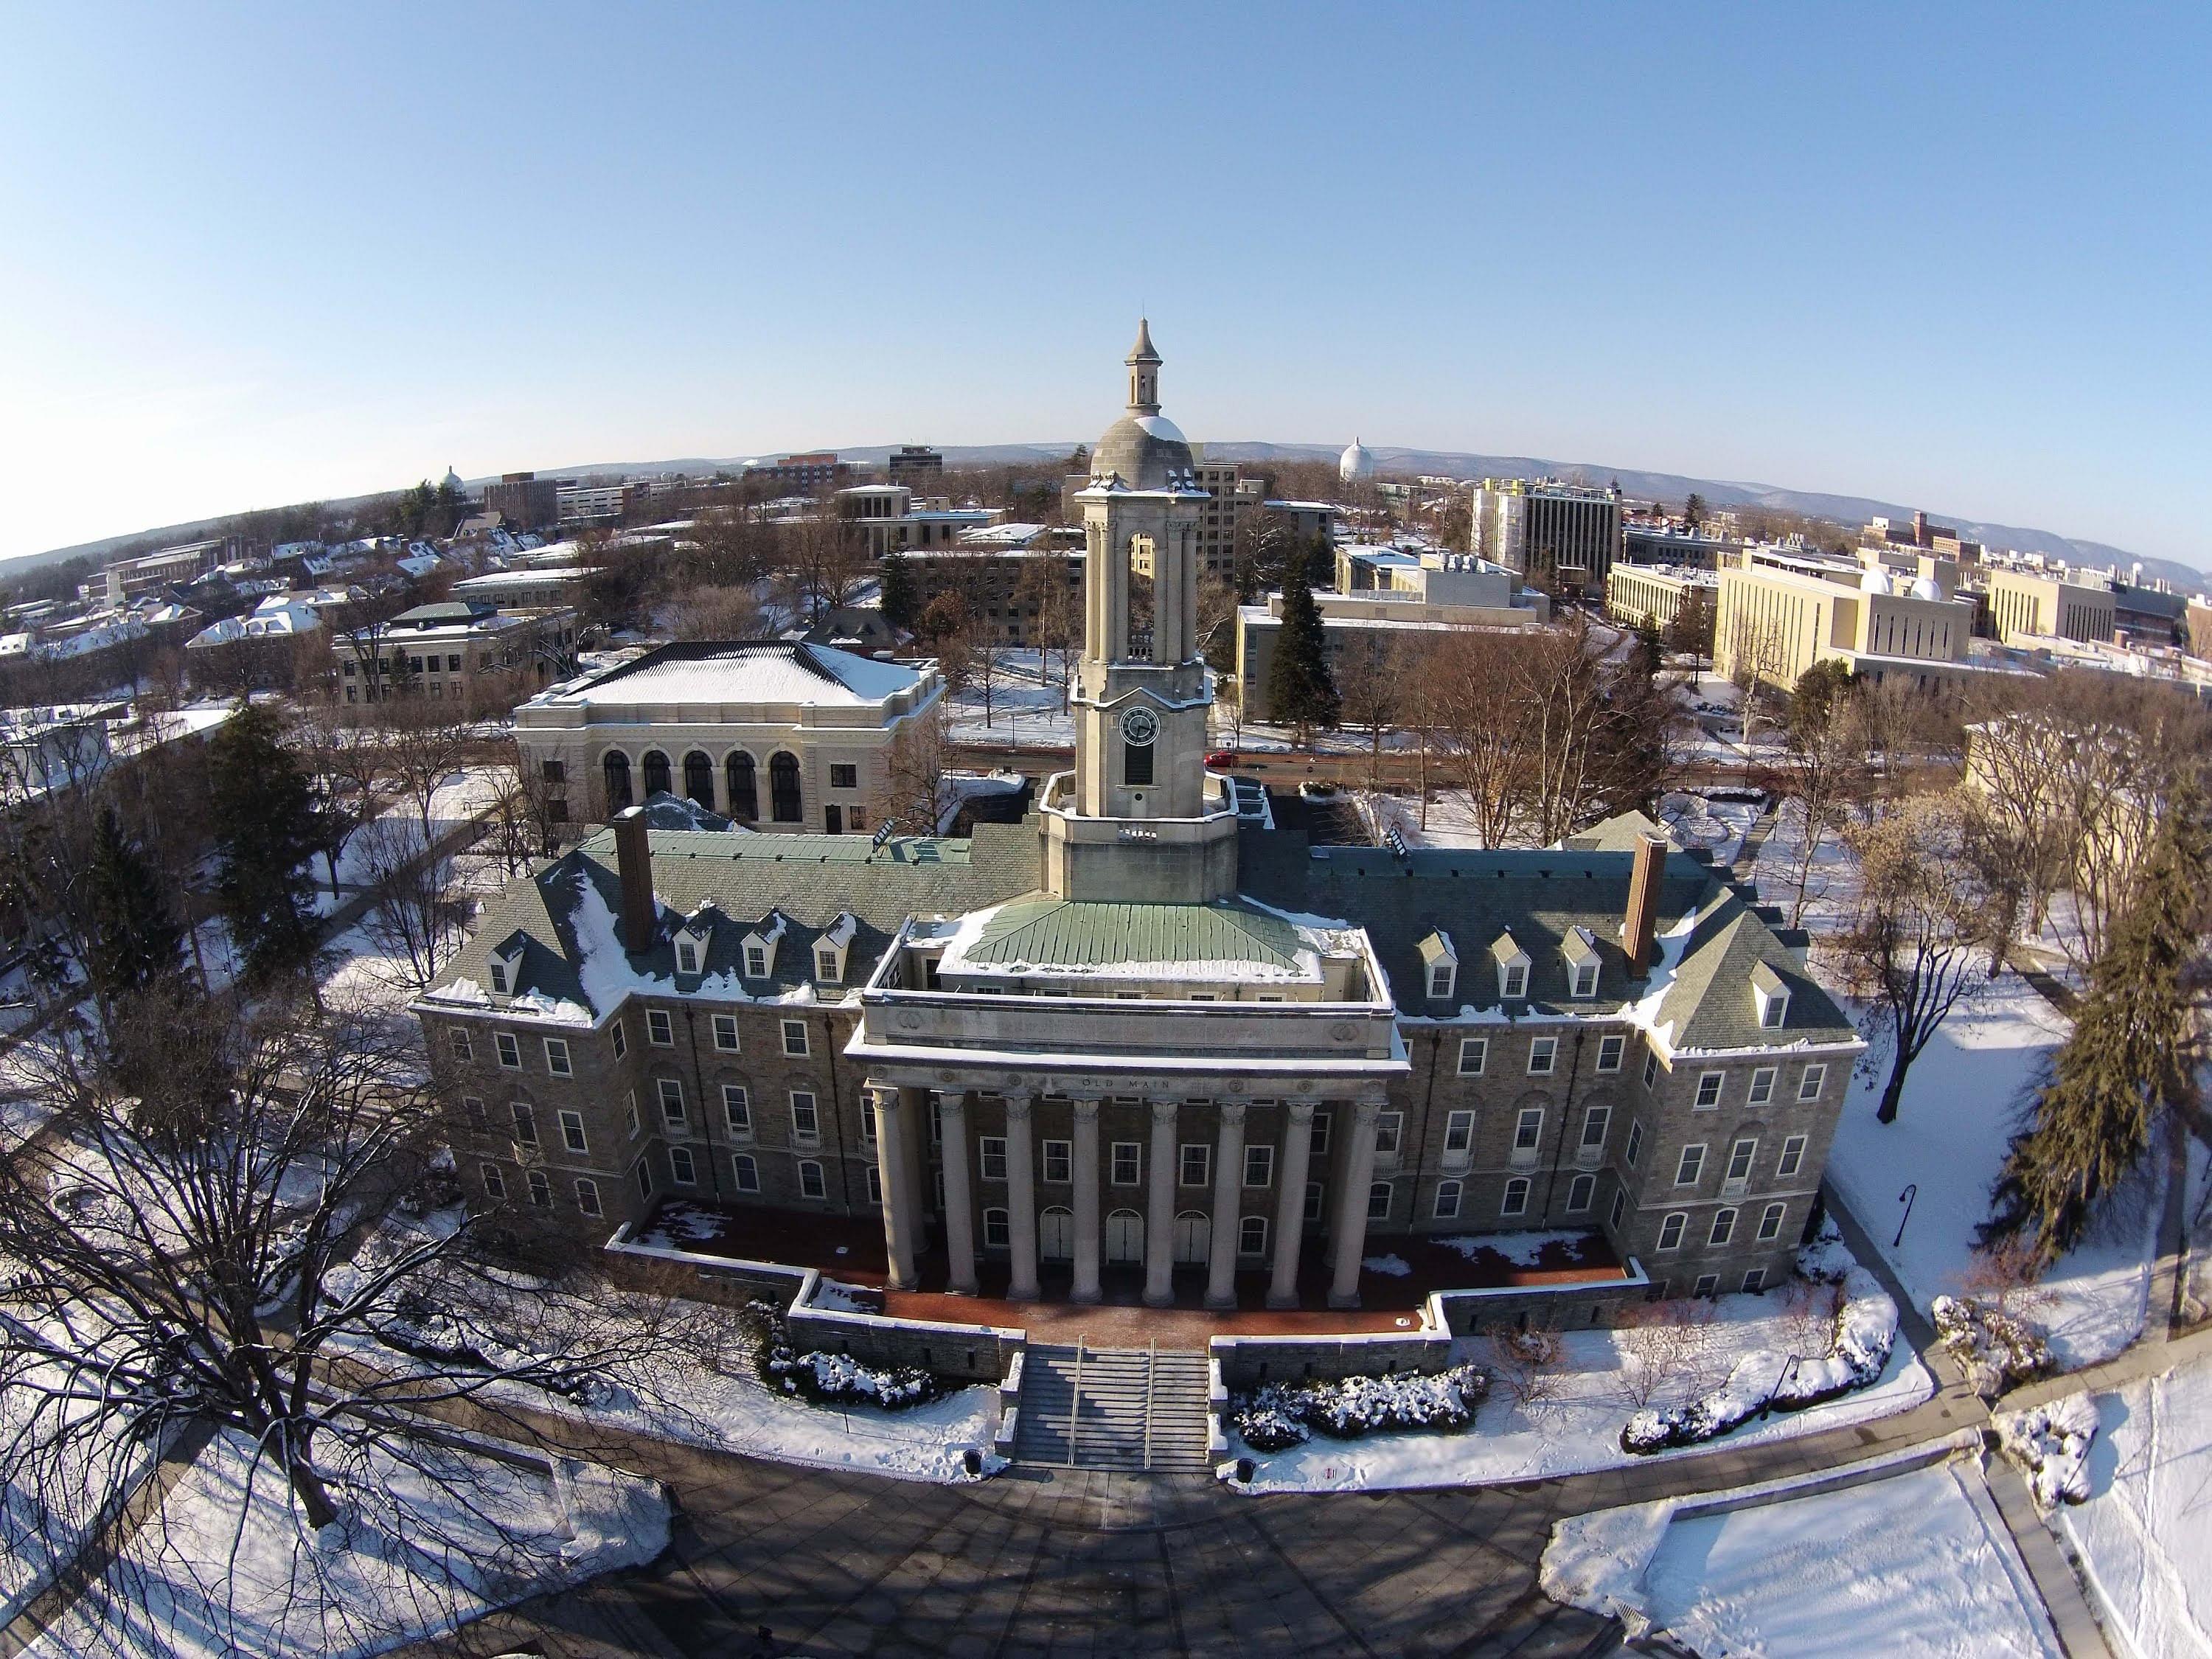 Penn State Undergraduate Admissions